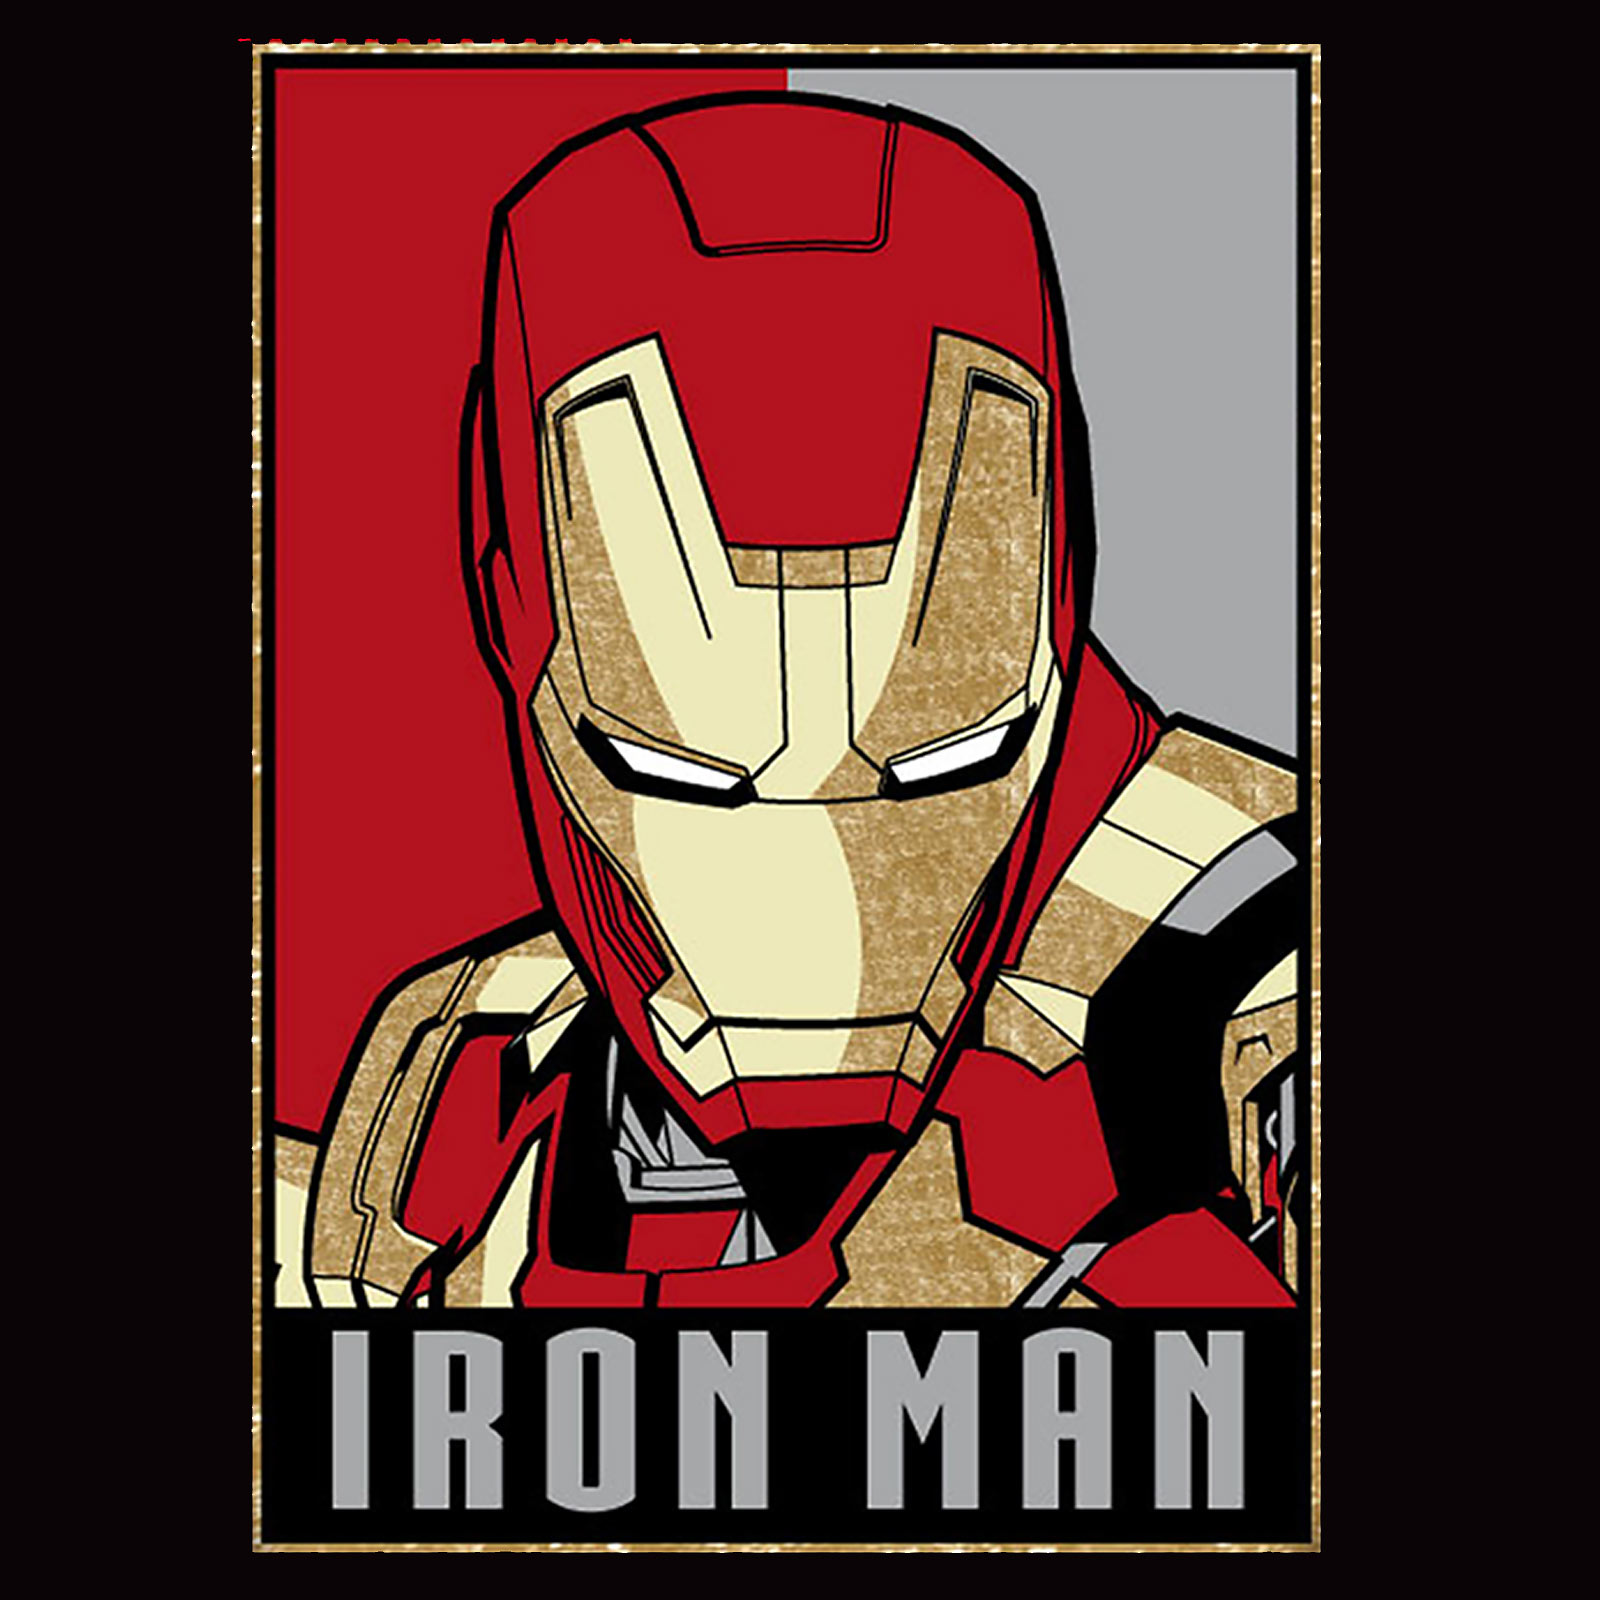 Iron Man - T-shirt Poster noir